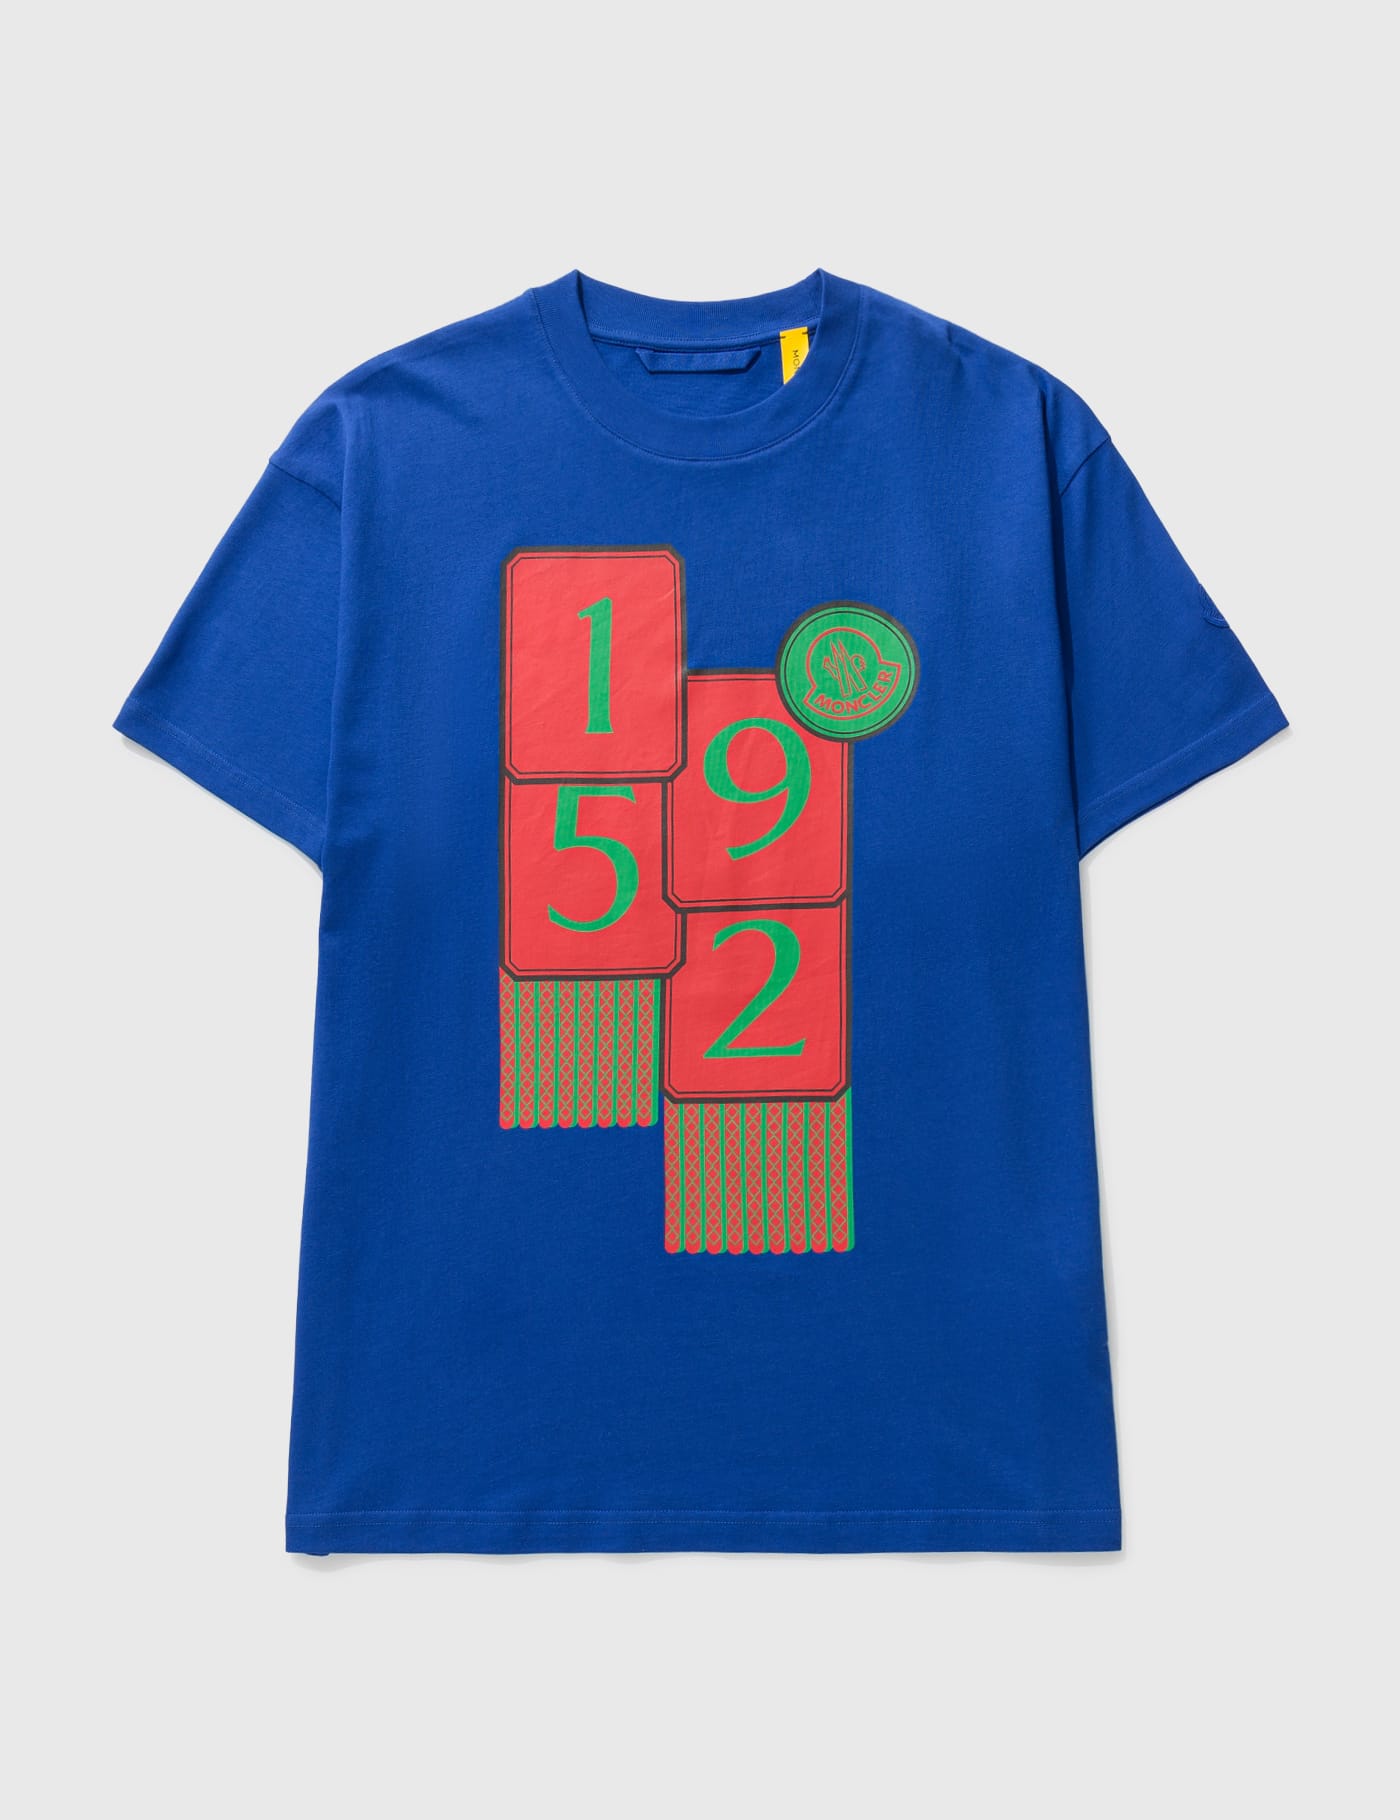 몽클레어 지니어스2 1952 남성 반팔티 Moncler Genius 1952 T-shirt